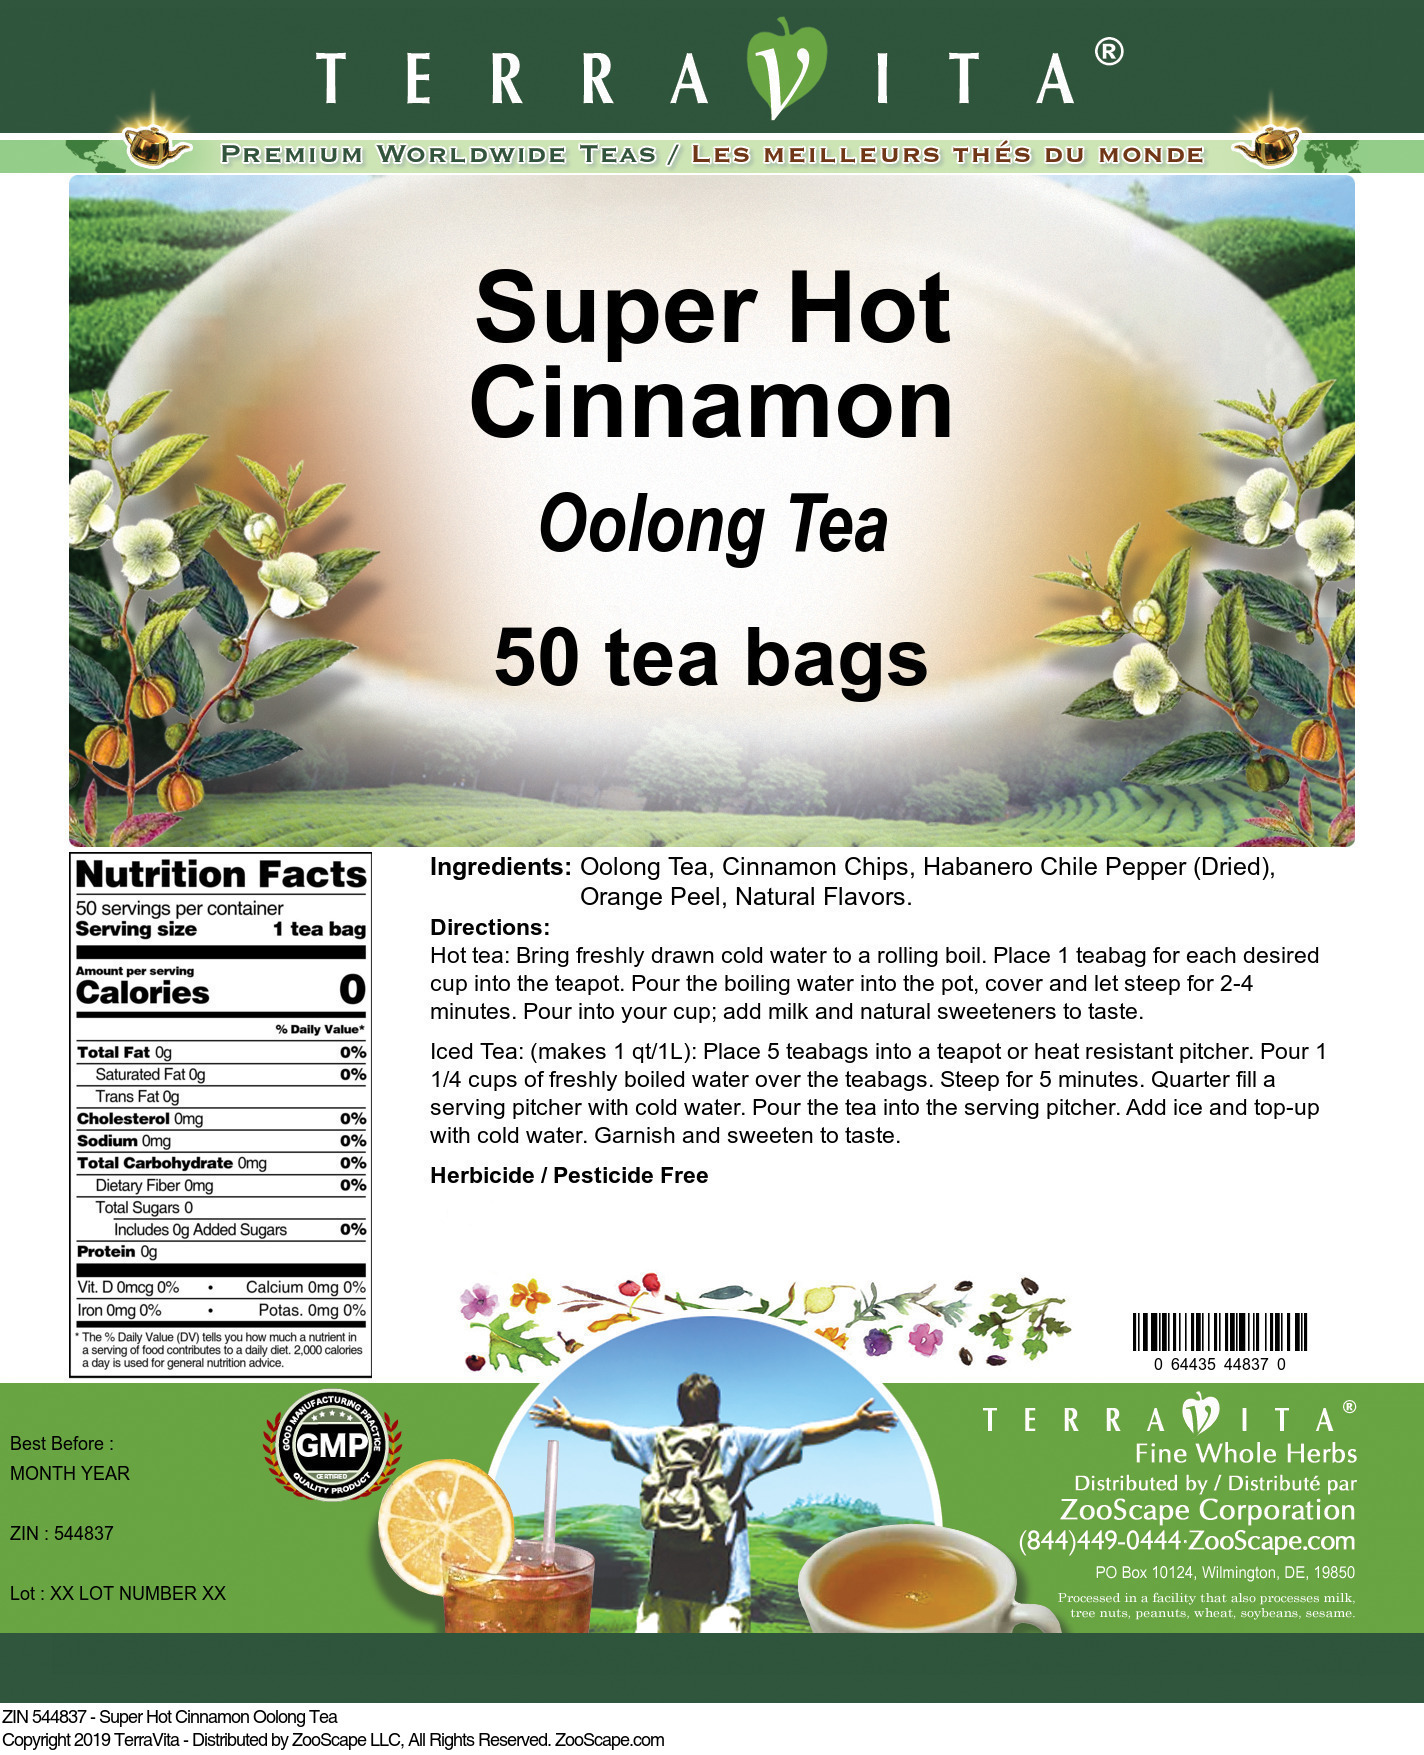 Super Hot Cinnamon Oolong Tea - Label